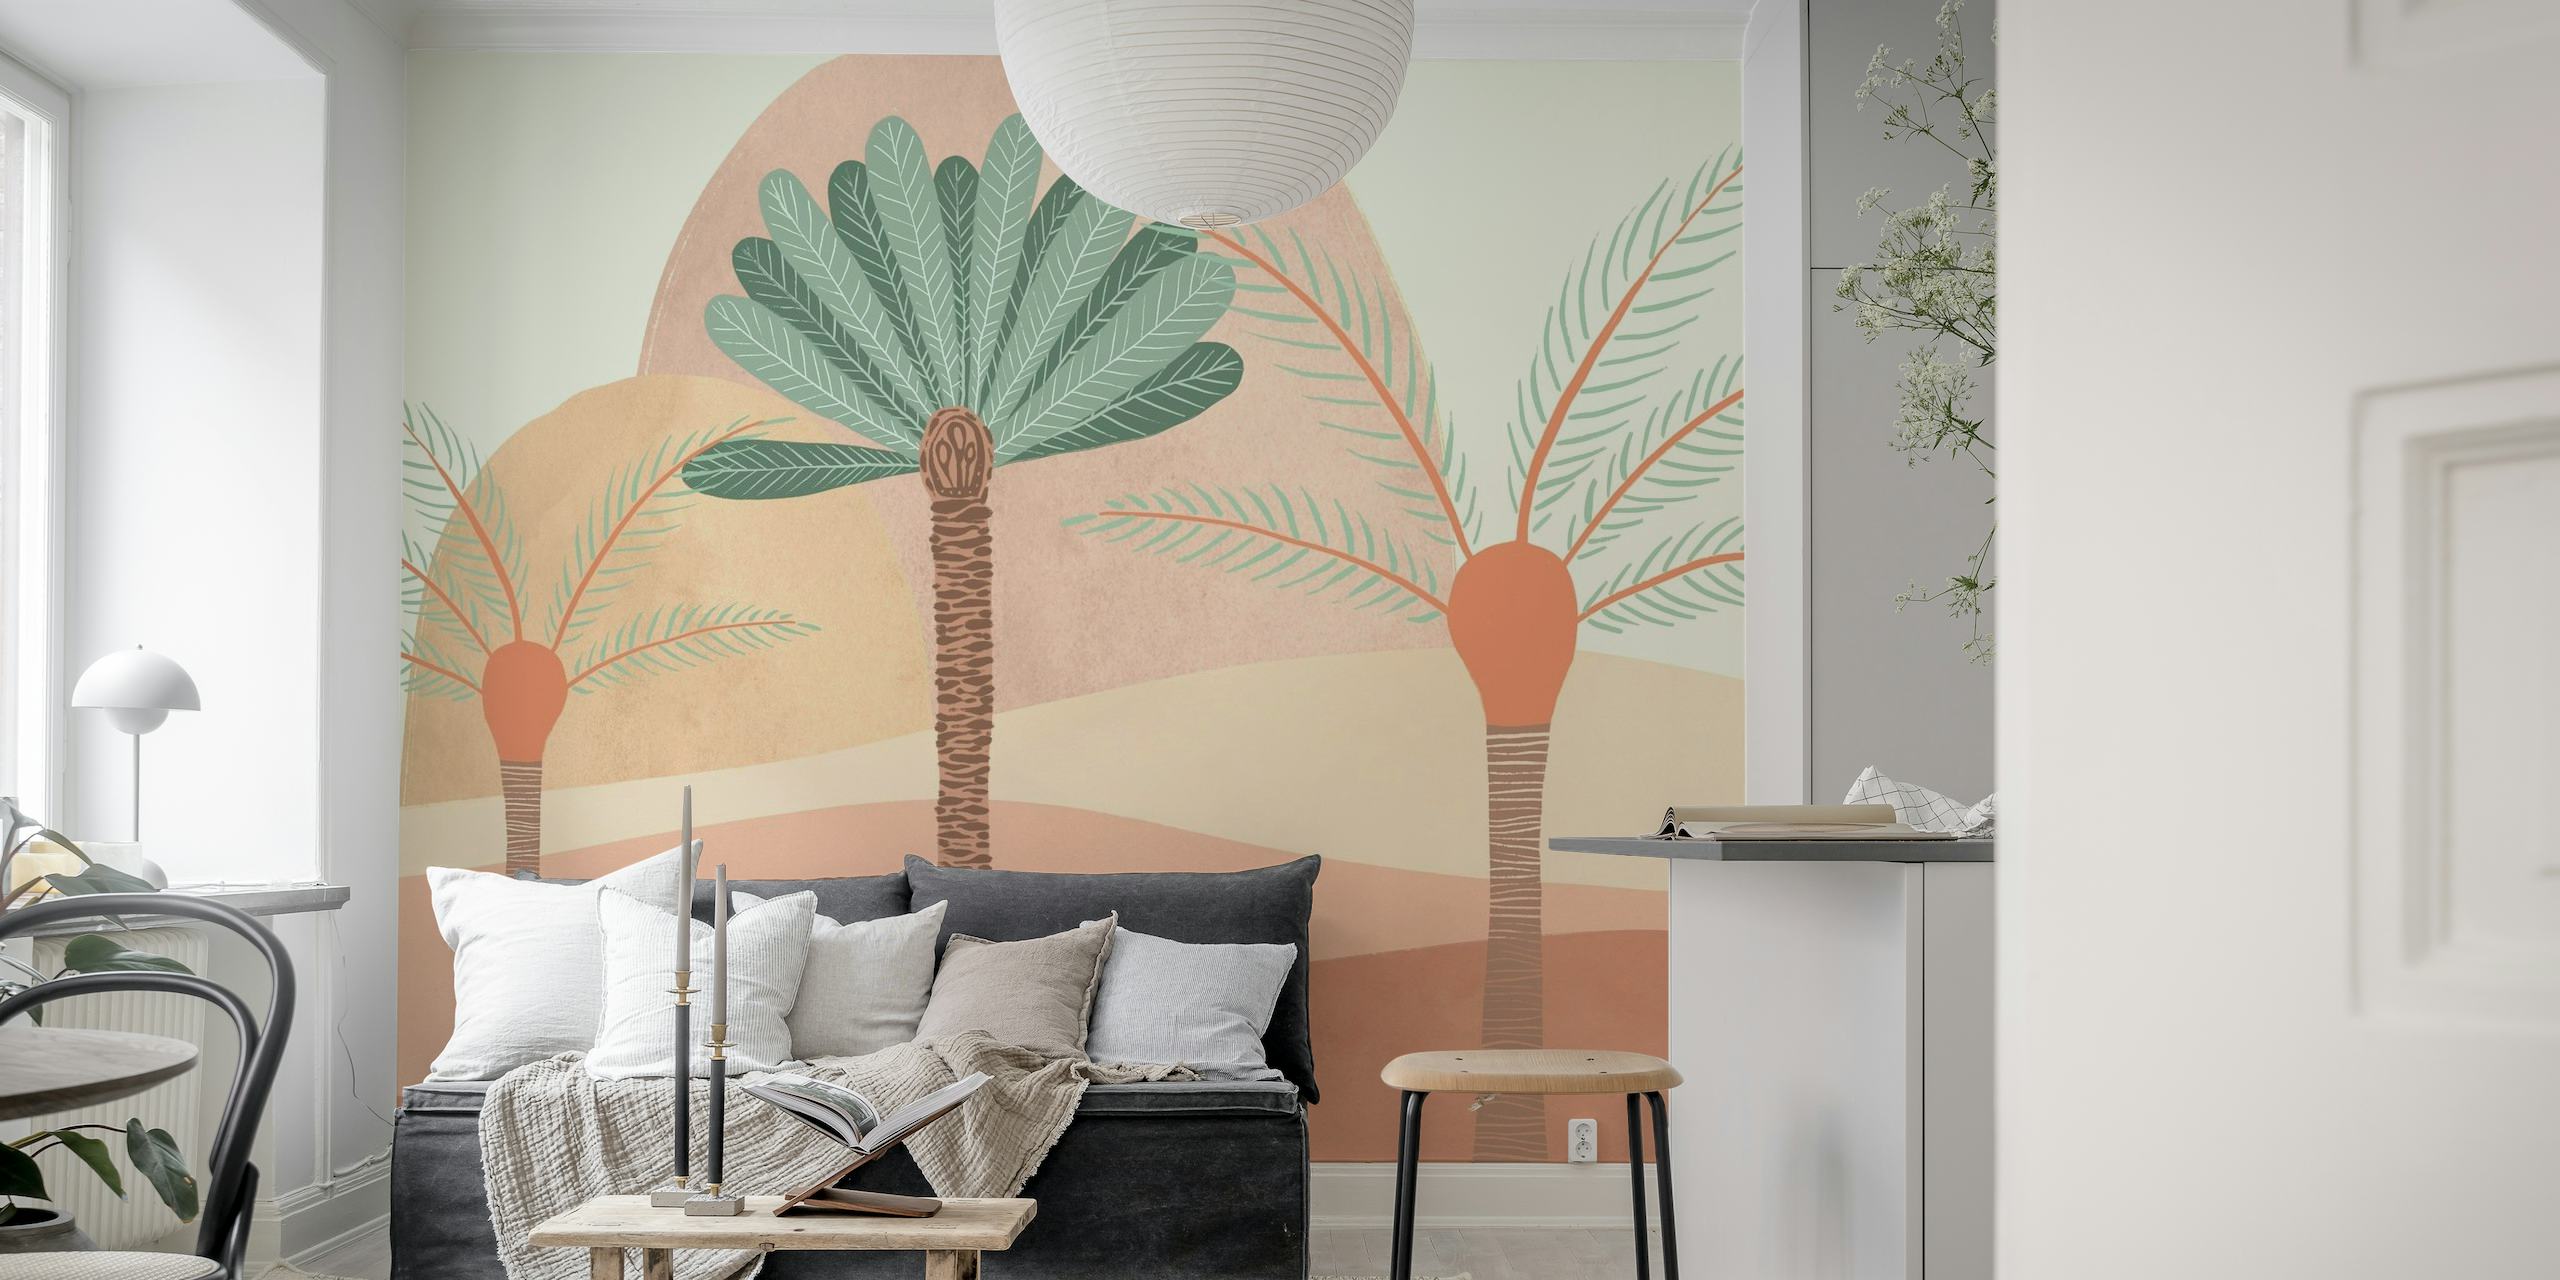 Peachy Sands mirna pustinjska zidna slika sa stiliziranom florom u nježnim breskvastim i pješčanim tonovima.